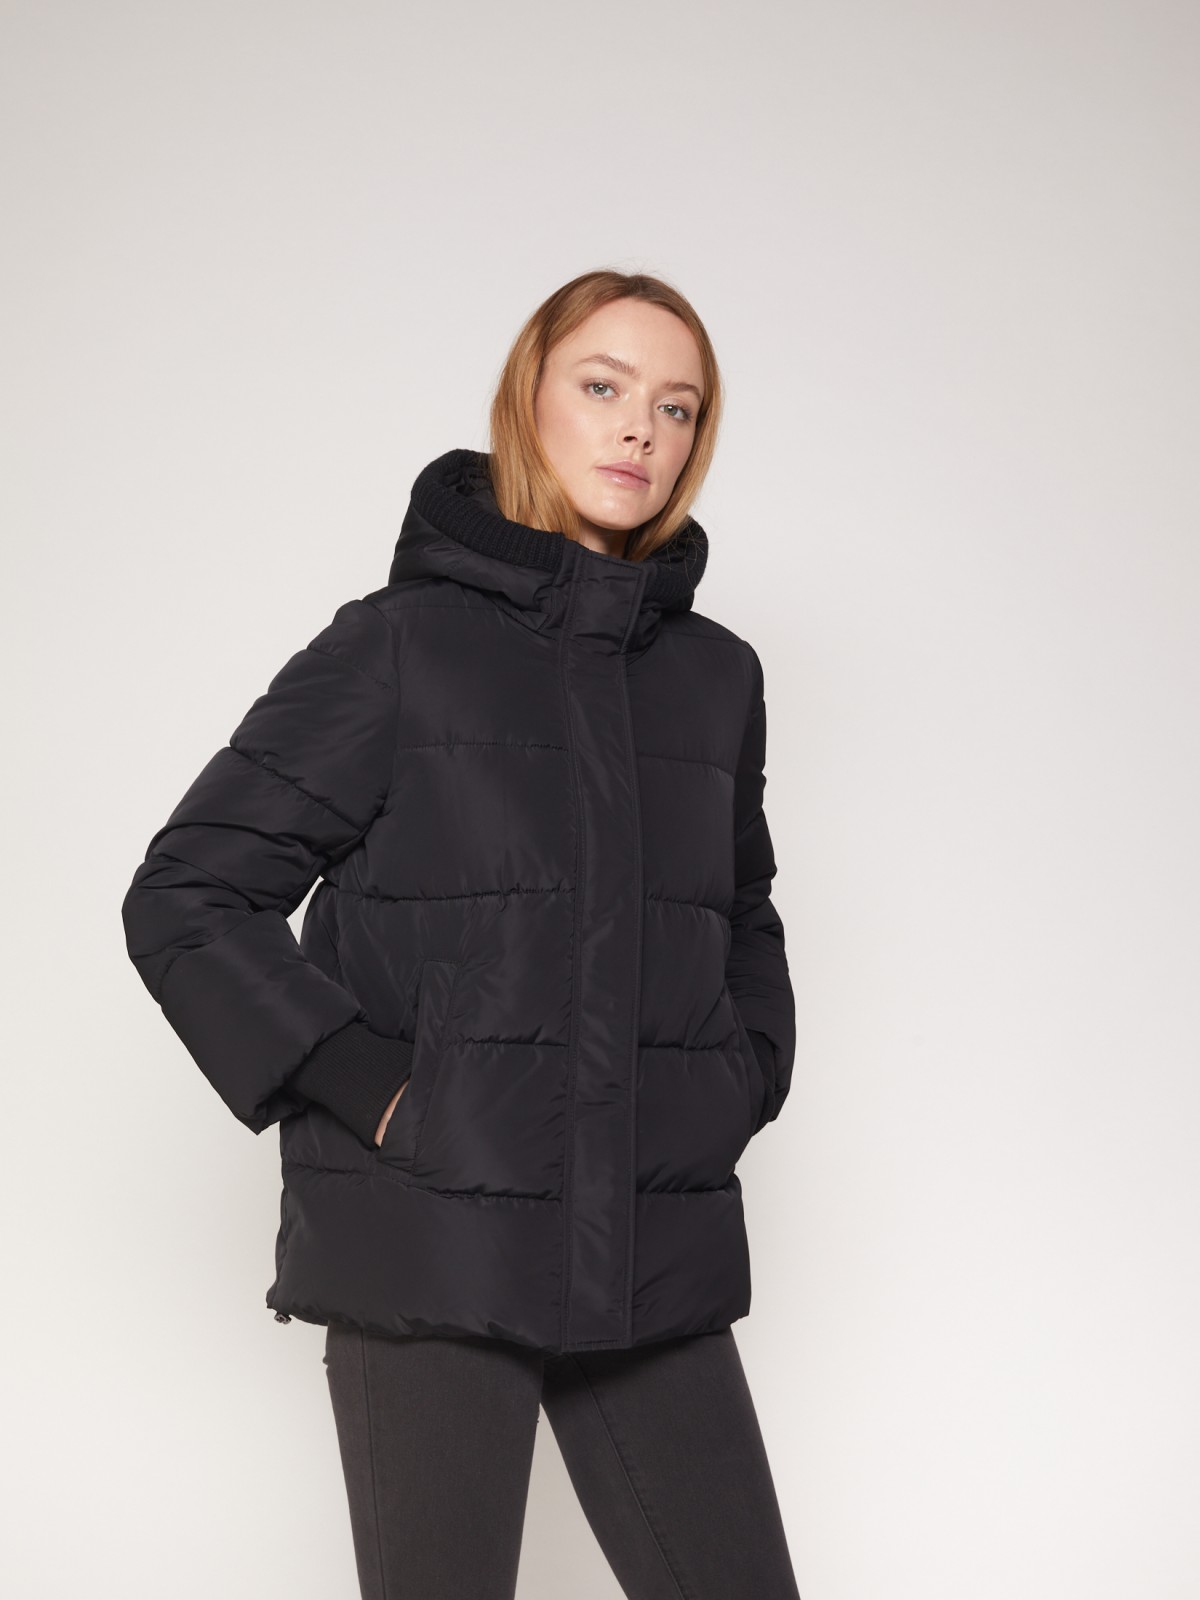 Тёплая стёганая куртка с капюшоном zolla 021335102264, цвет черный, размер S - фото 2